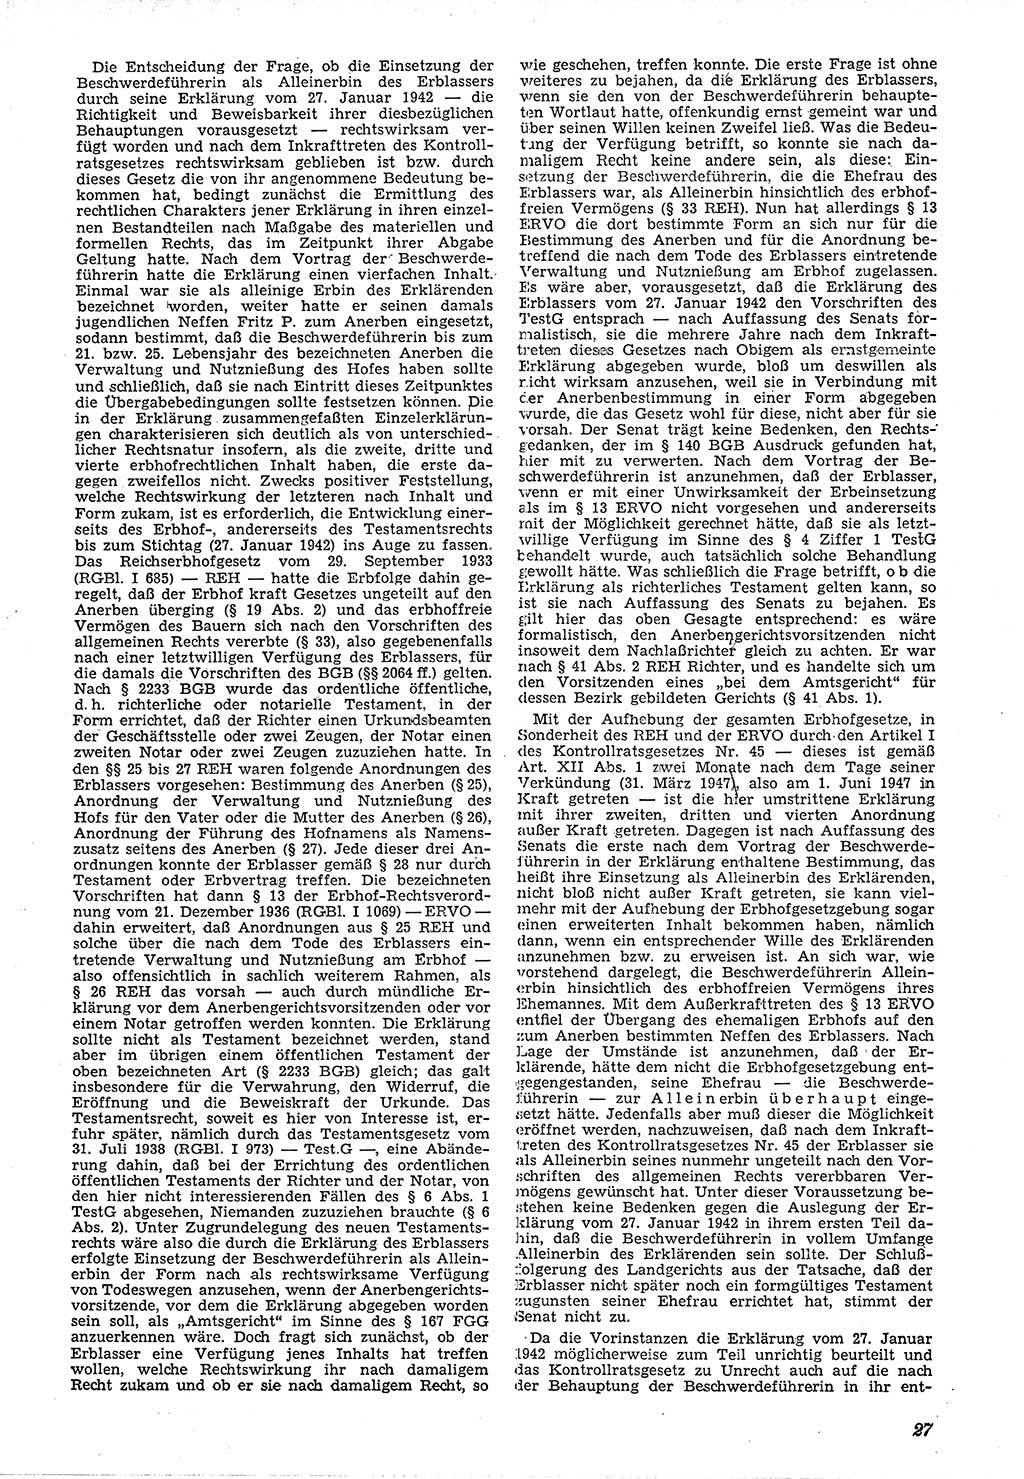 Neue Justiz (NJ), Zeitschrift für Recht und Rechtswissenschaft [Deutsche Demokratische Republik (DDR)], 4. Jahrgang 1950, Seite 27 (NJ DDR 1950, S. 27)